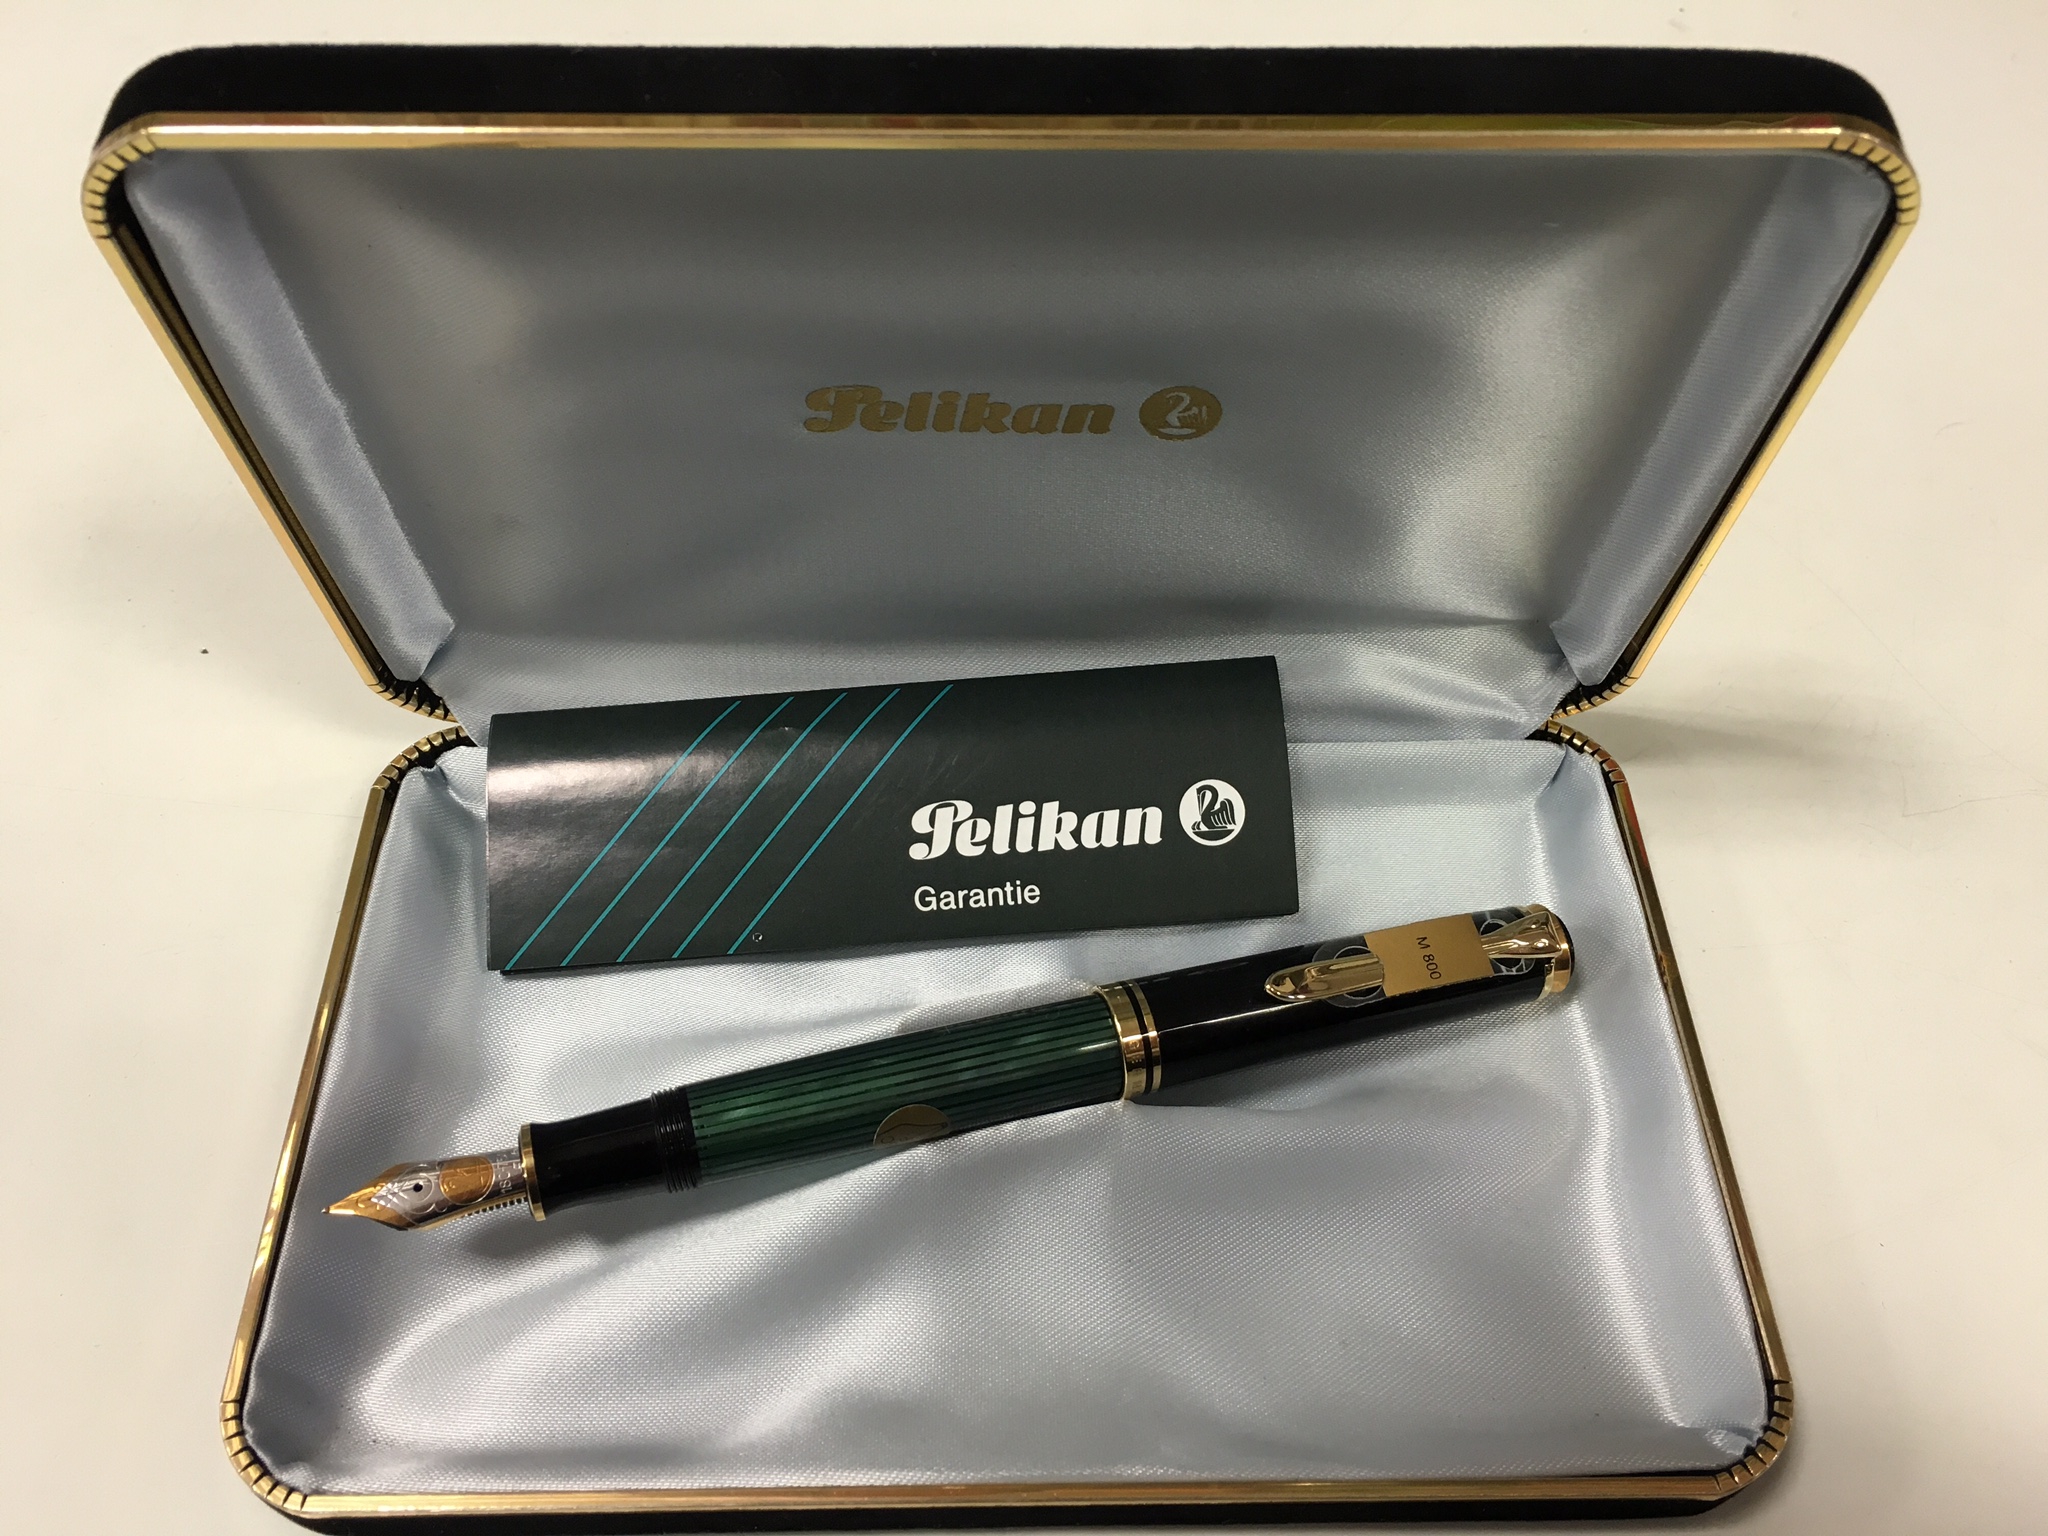 Penna Stilografica Pelikan Souveran M800 Green & Black con pennino in oro -  Cartolibreria Chiozzini Aldo di Cristian